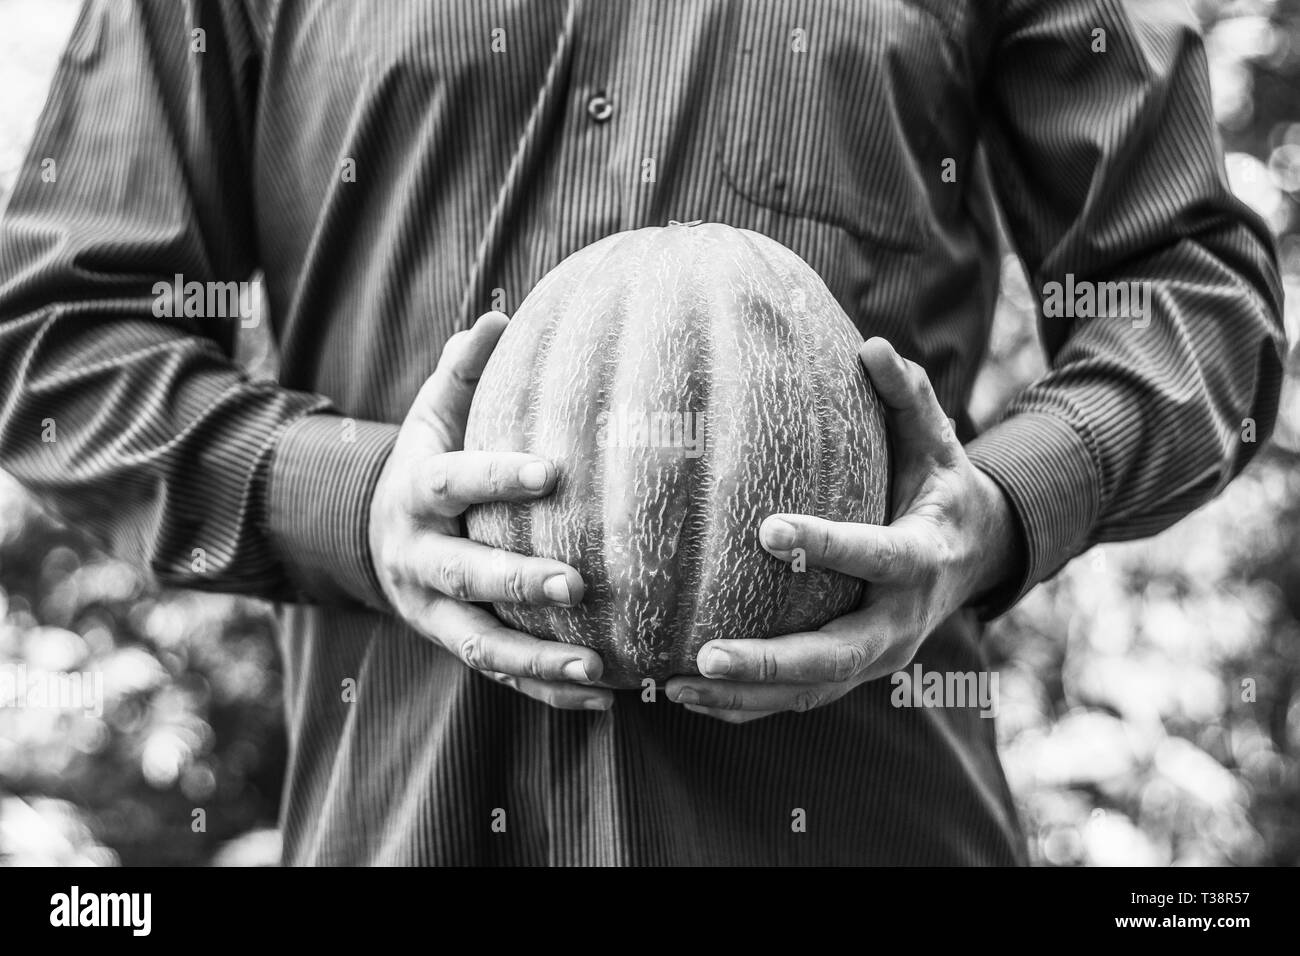 L'homme est maintenant un melon mûr, photo en noir et blanc Banque D'Images